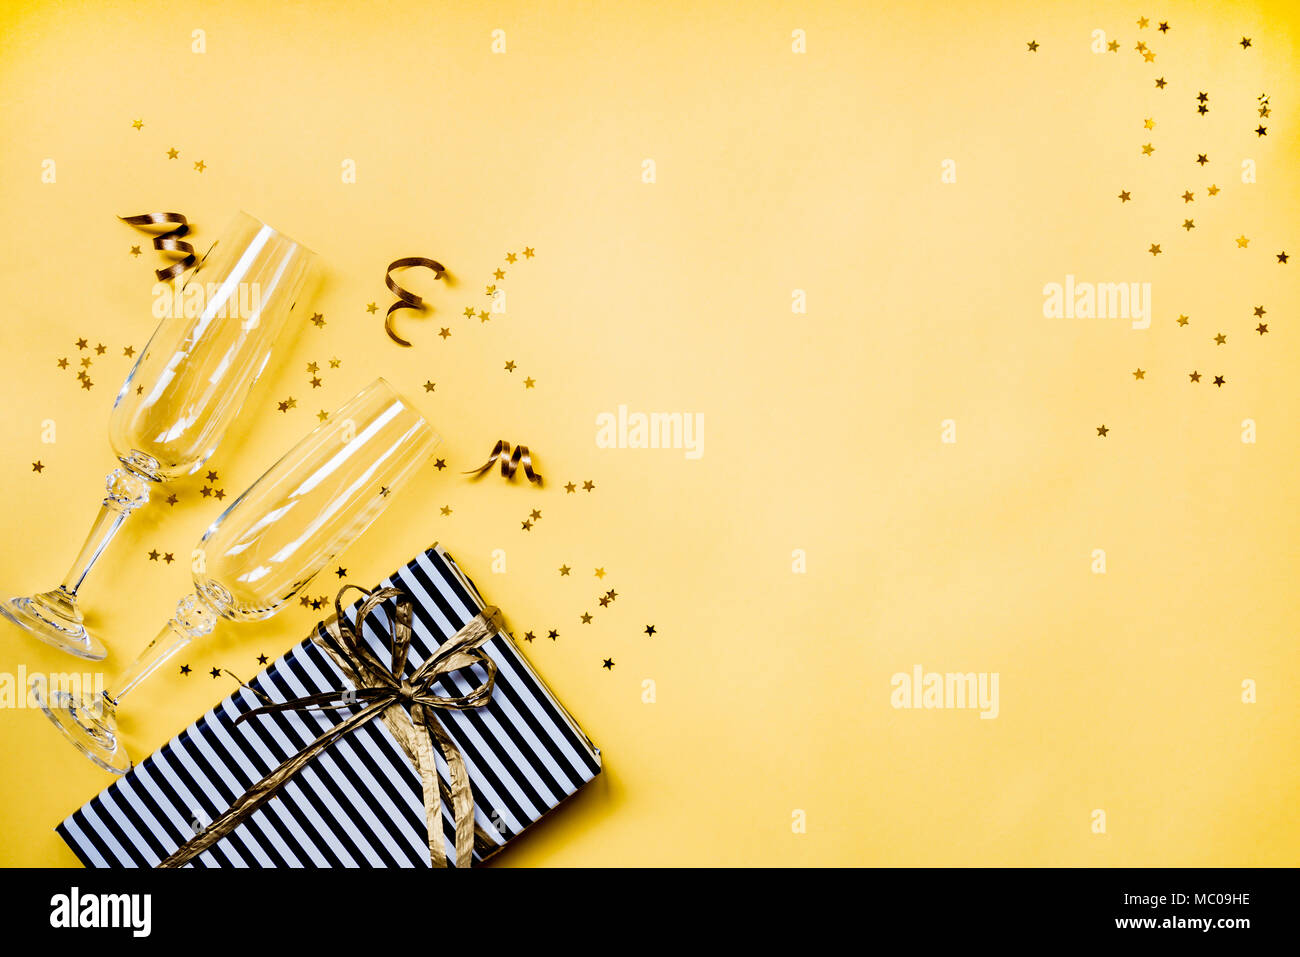 Celebrazione di sfondo - vista dall'alto di due azzuro bicchieri di champagne, un regalo avvolto in bianco e nero a strisce di carta, nastri e a forma di stella gold Foto Stock